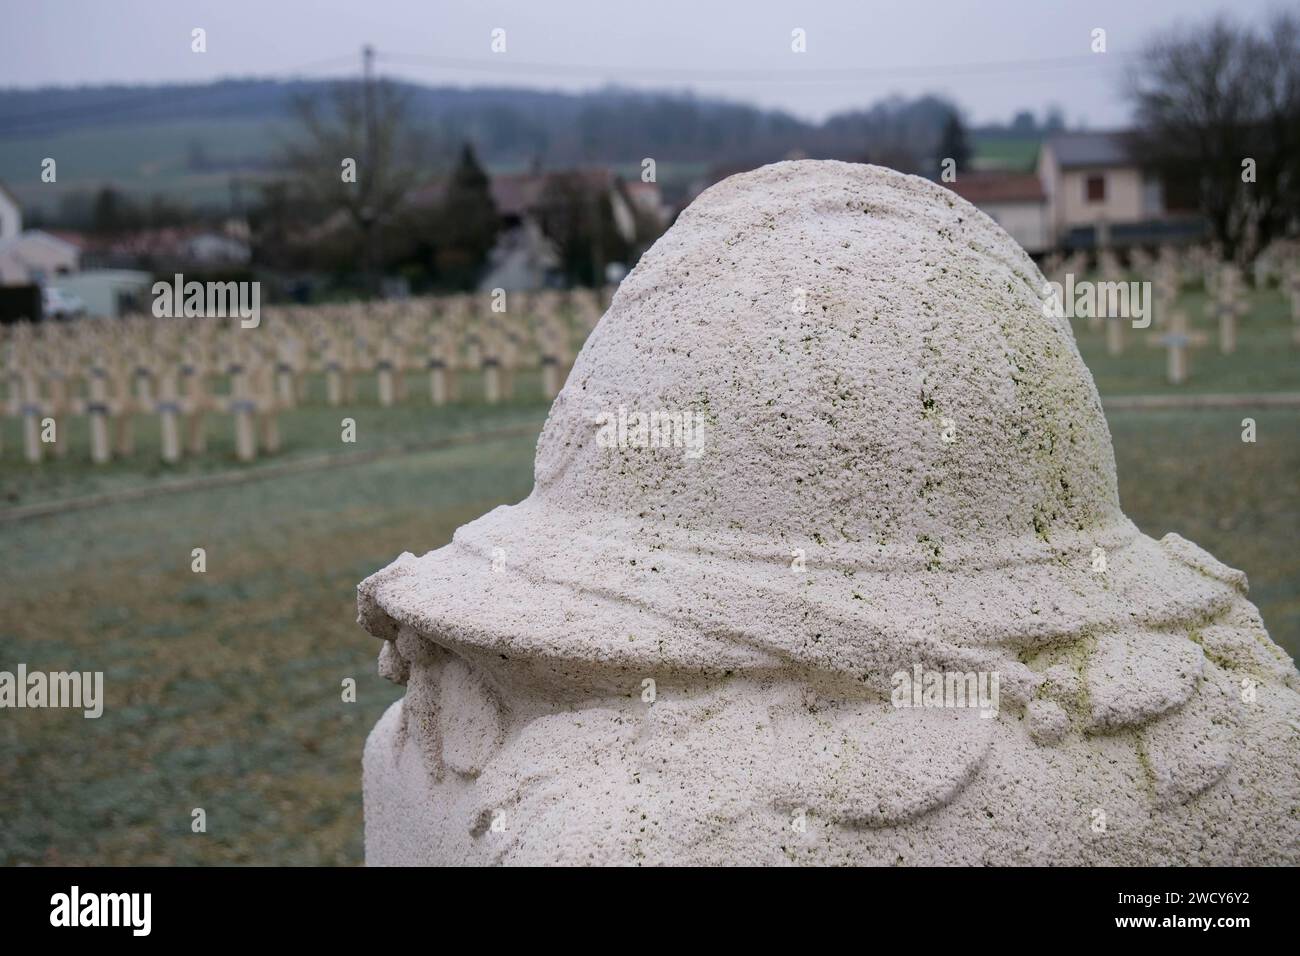 Nécropole militaire française, Faubourg-pavé, Verdun, Meuse, région Grand-est, France Banque D'Images